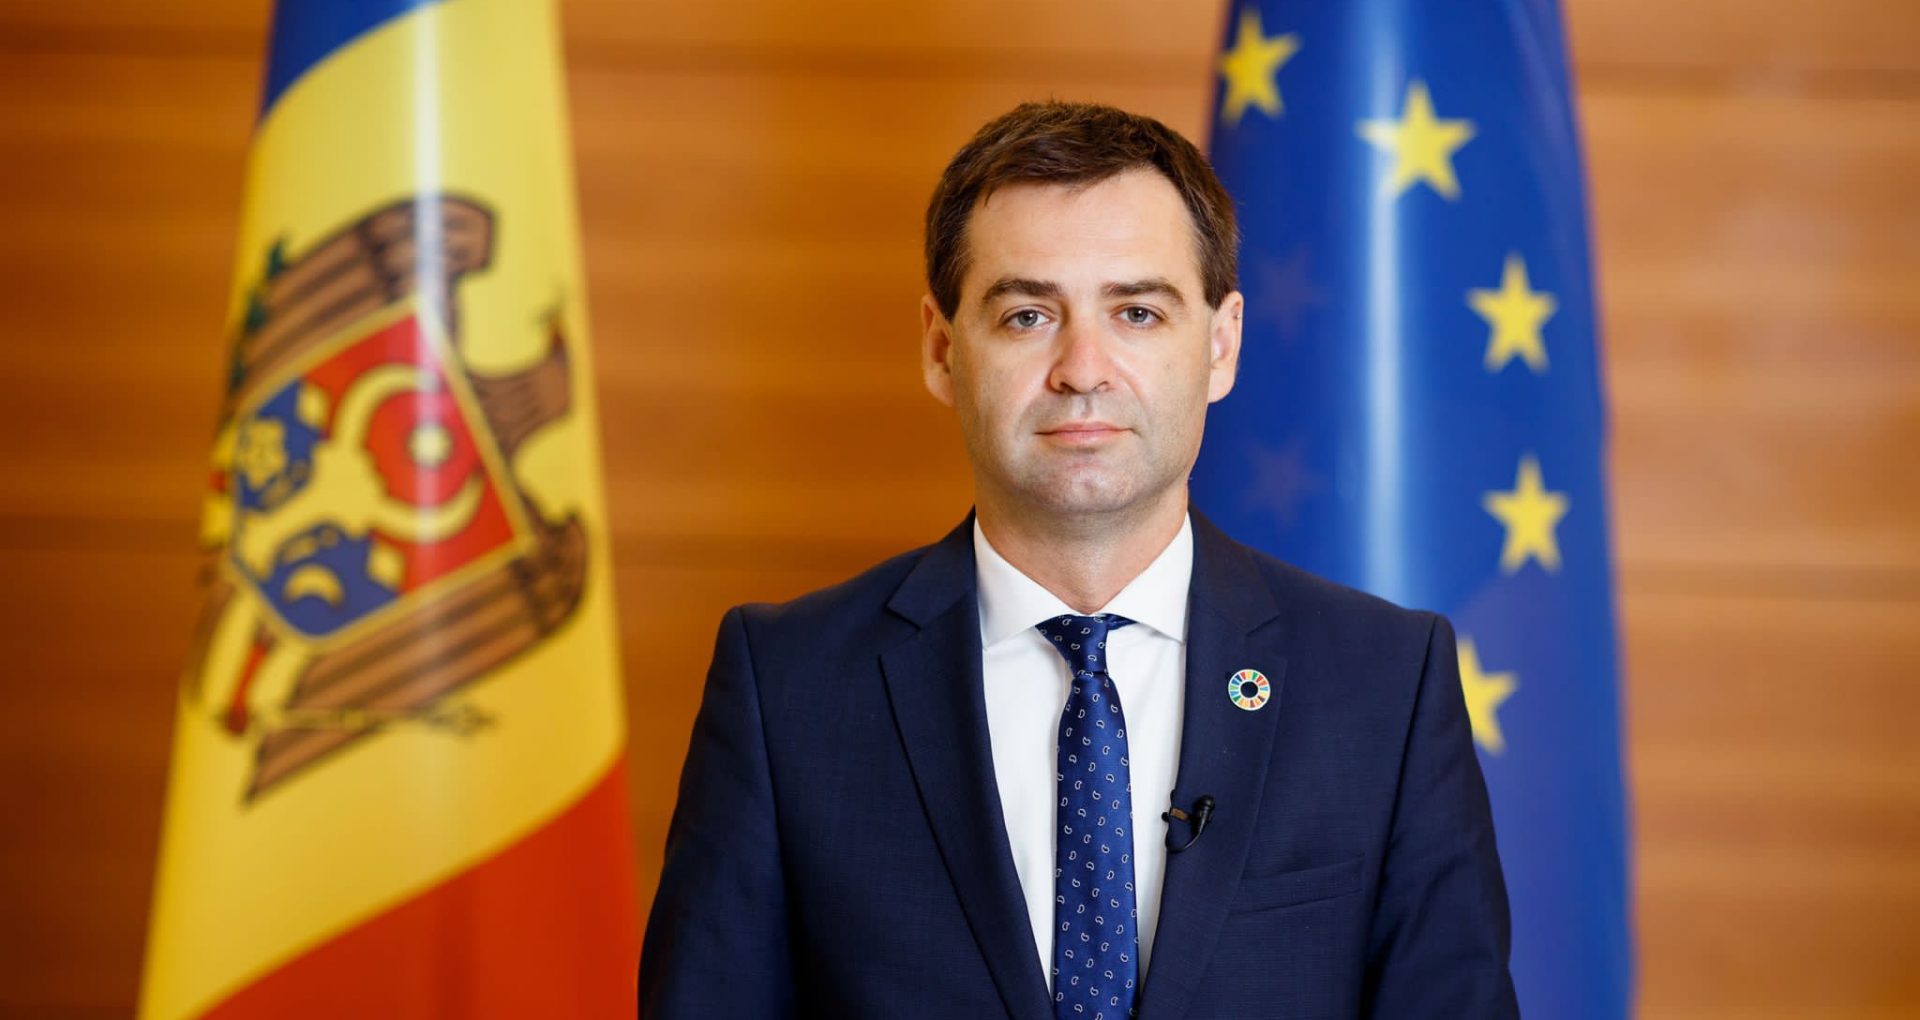 Viceprim-ministrul Nicu Popescu va participa la lucrările celei de-a 28-a reuniuni anuale a Consiliului Ministerial al Organizației pentru Securitate și Cooperare în Europa, care se va desfășura la Stockholm